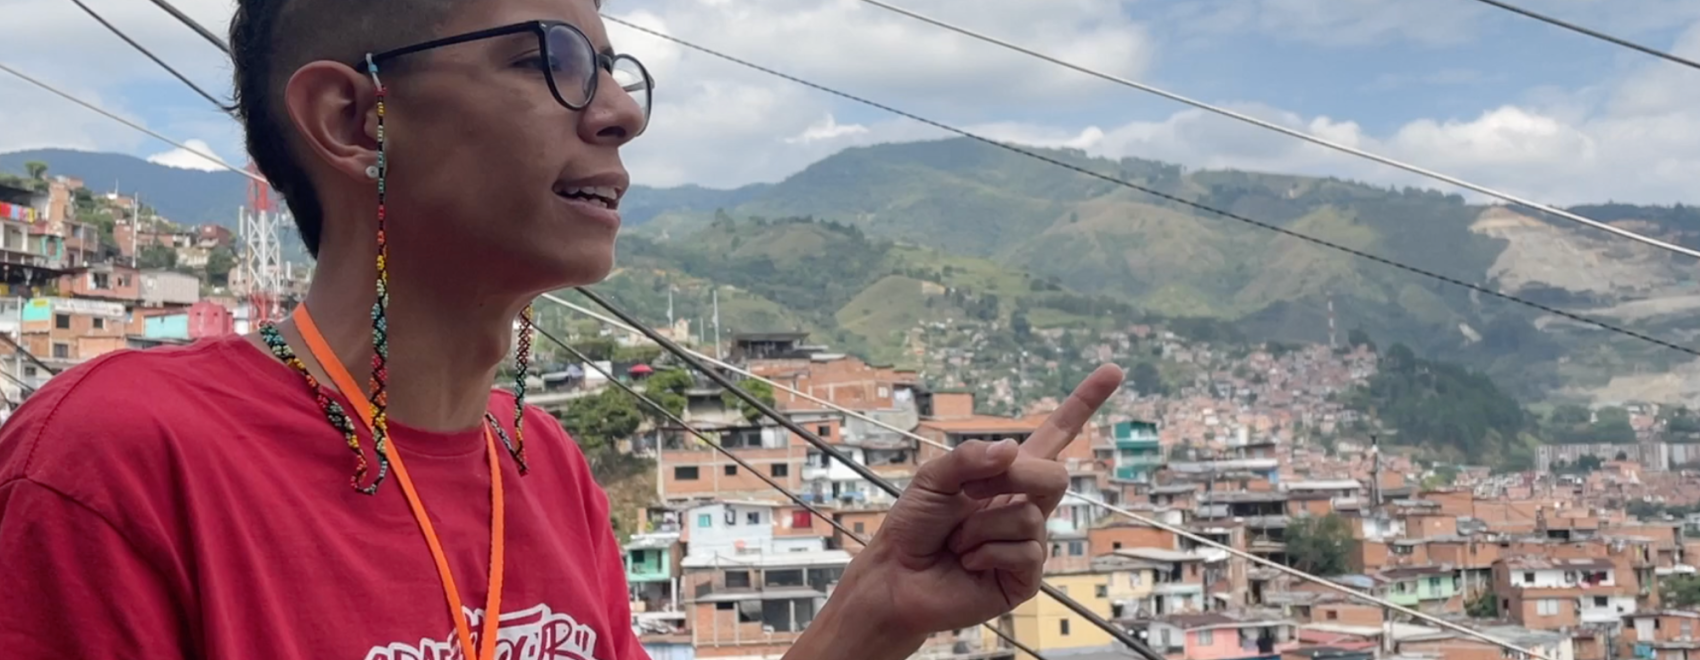 Comuna 13 Video Tour Medellin Colombia